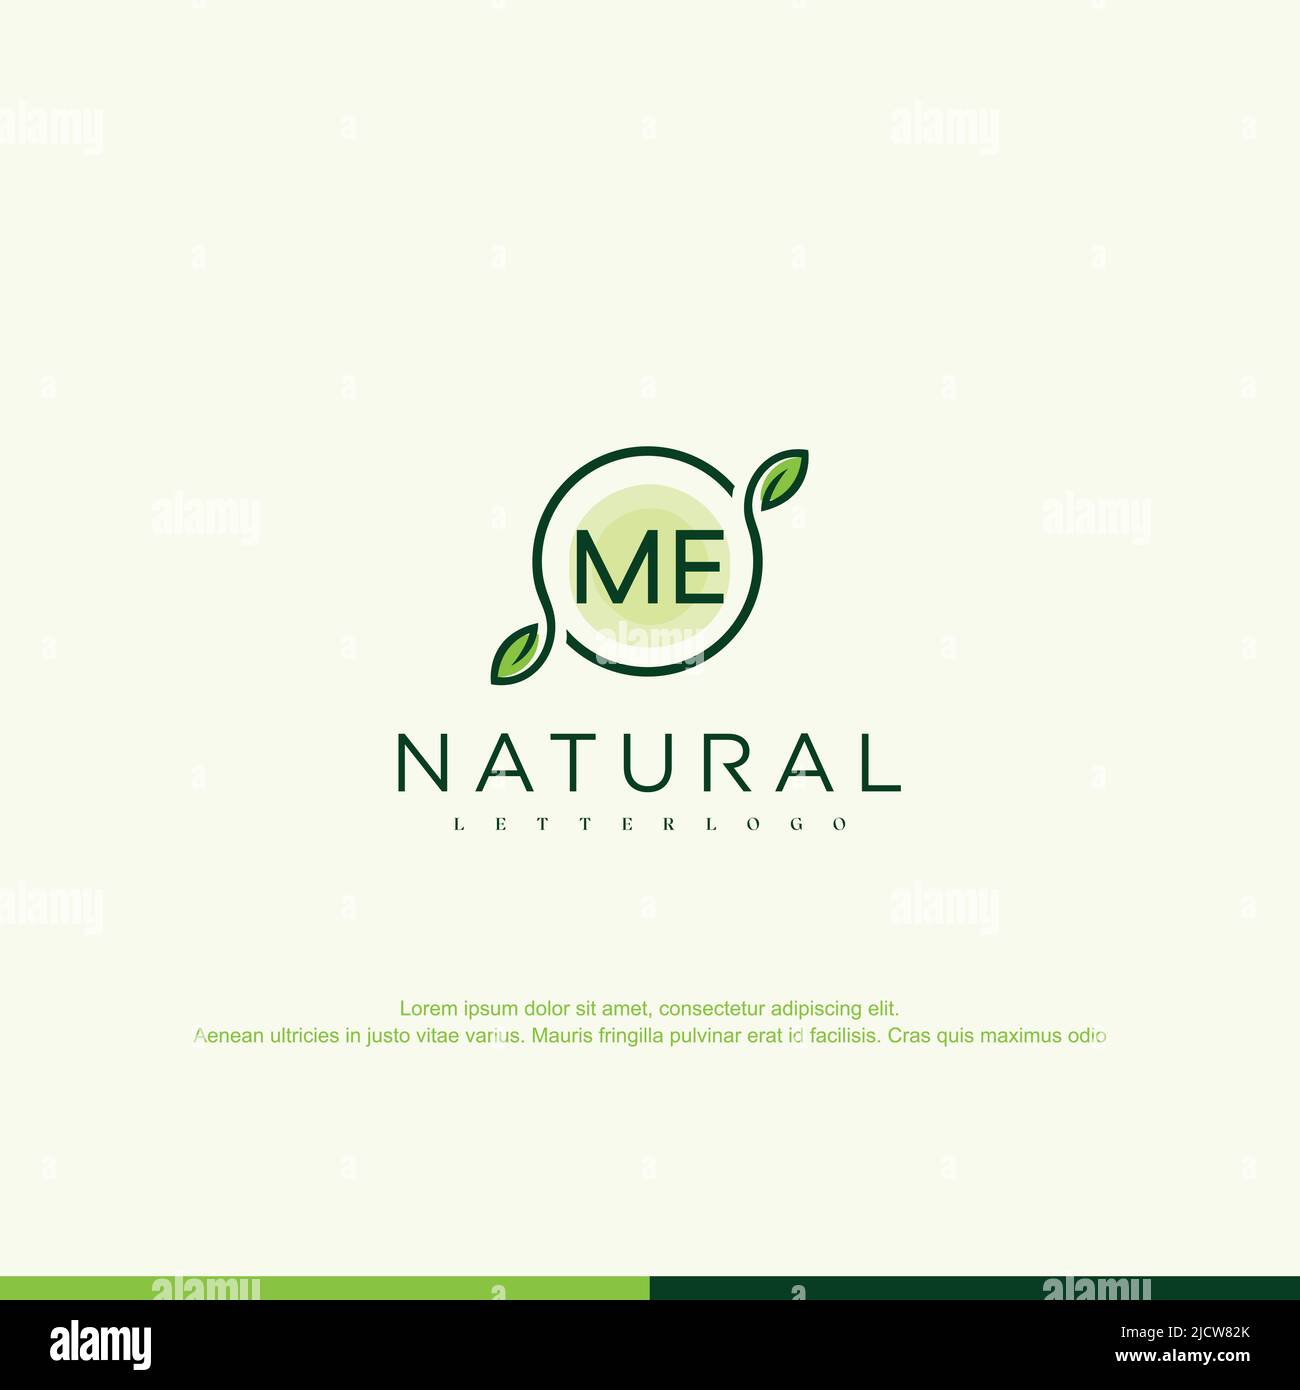 ME Initial Natural Logo Vorlage Vektor Stock Vektor